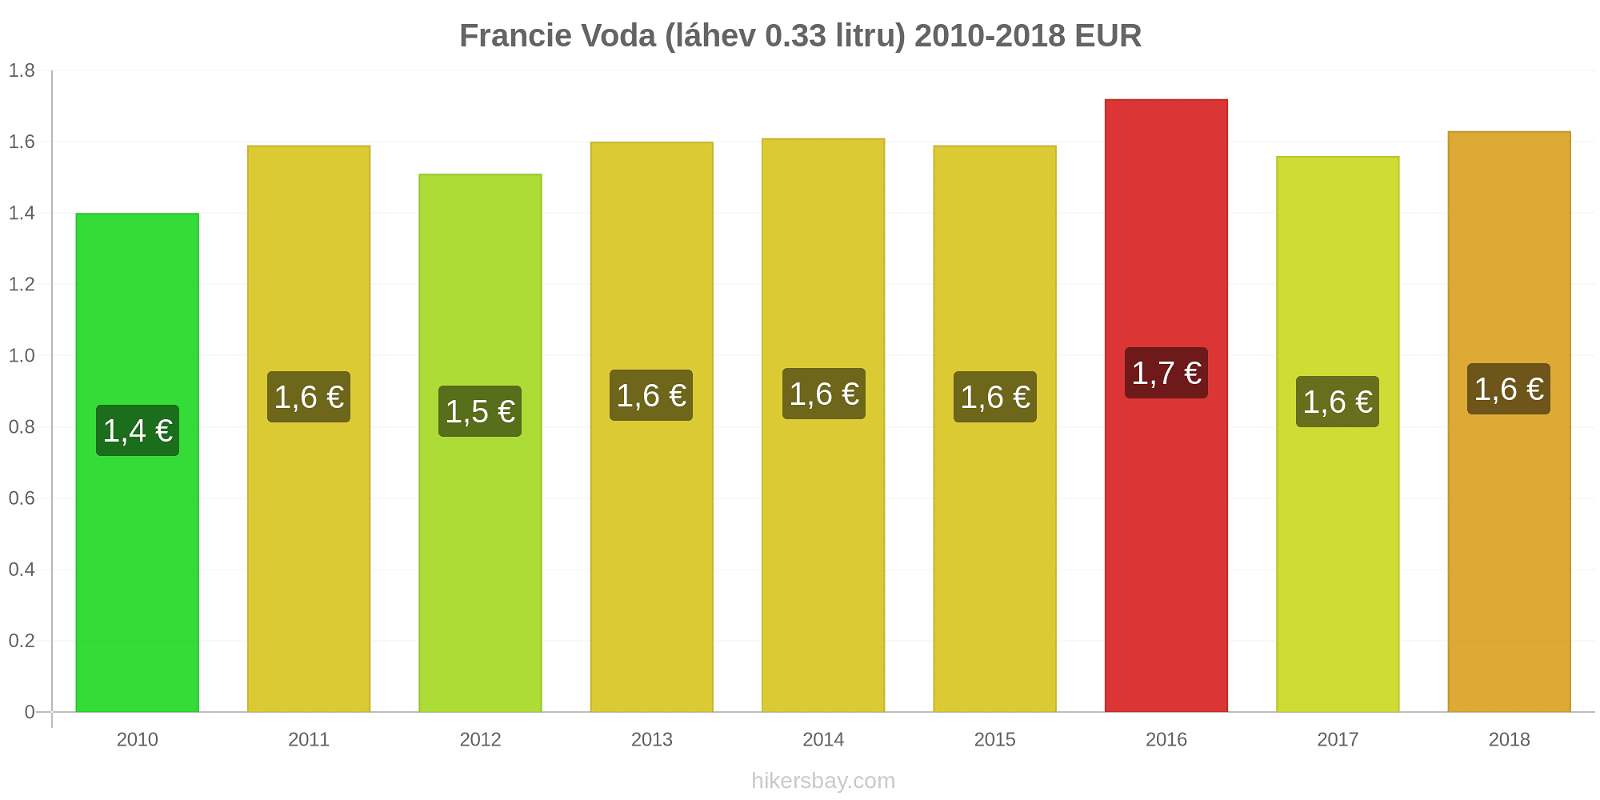 Francie změny cen Voda (láhev 0.33 litru) hikersbay.com